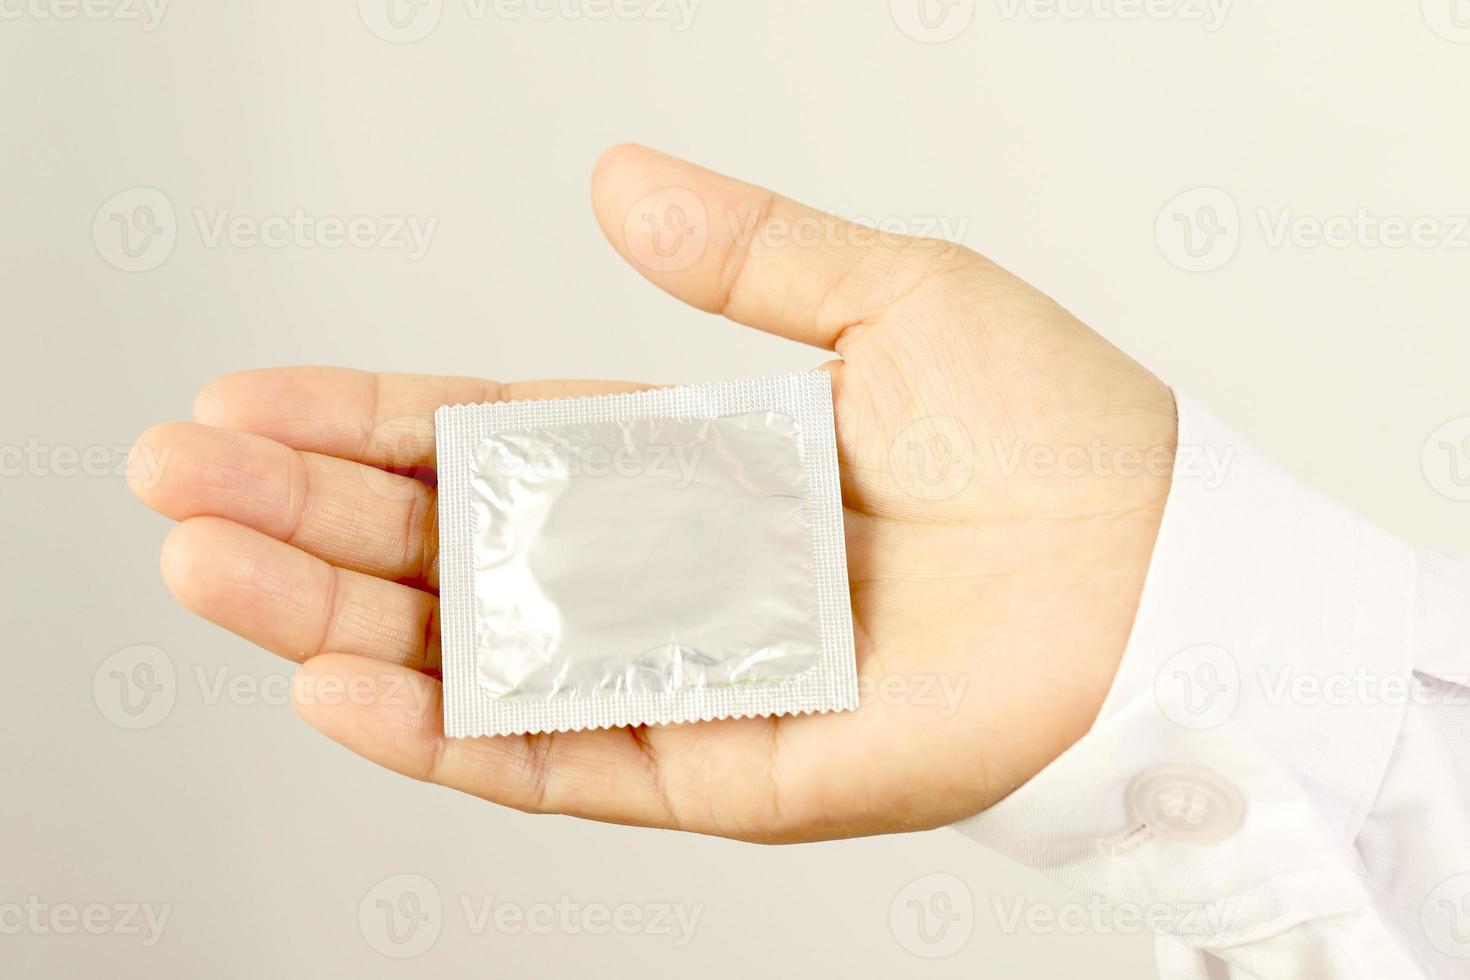 concéntrese en la mano, la mujer joven usa condones antes de tener relaciones sexuales cada vez para prevenir el sida. foto